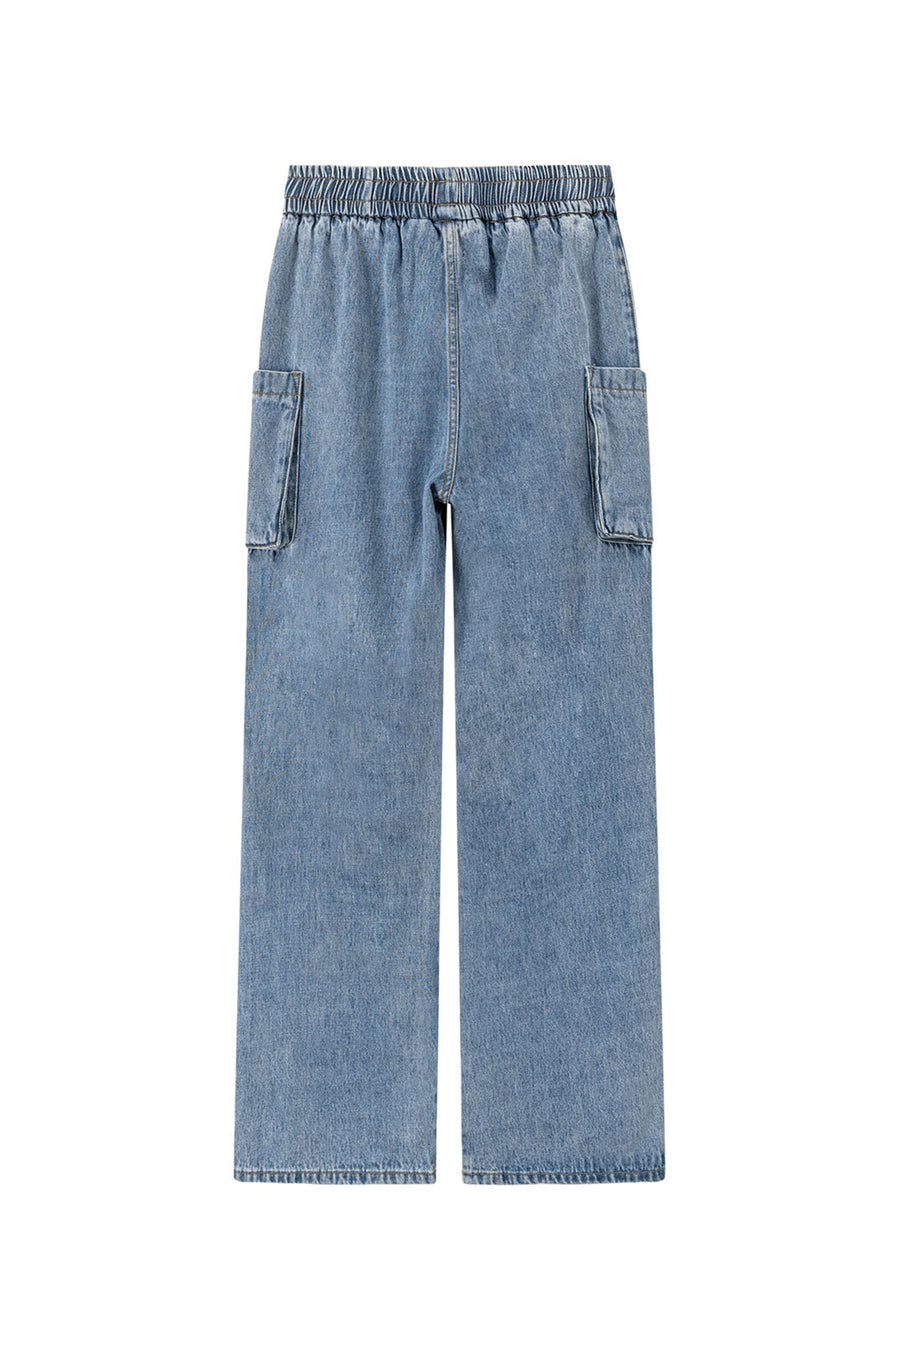 Cotton Pocket String Denim Jeans